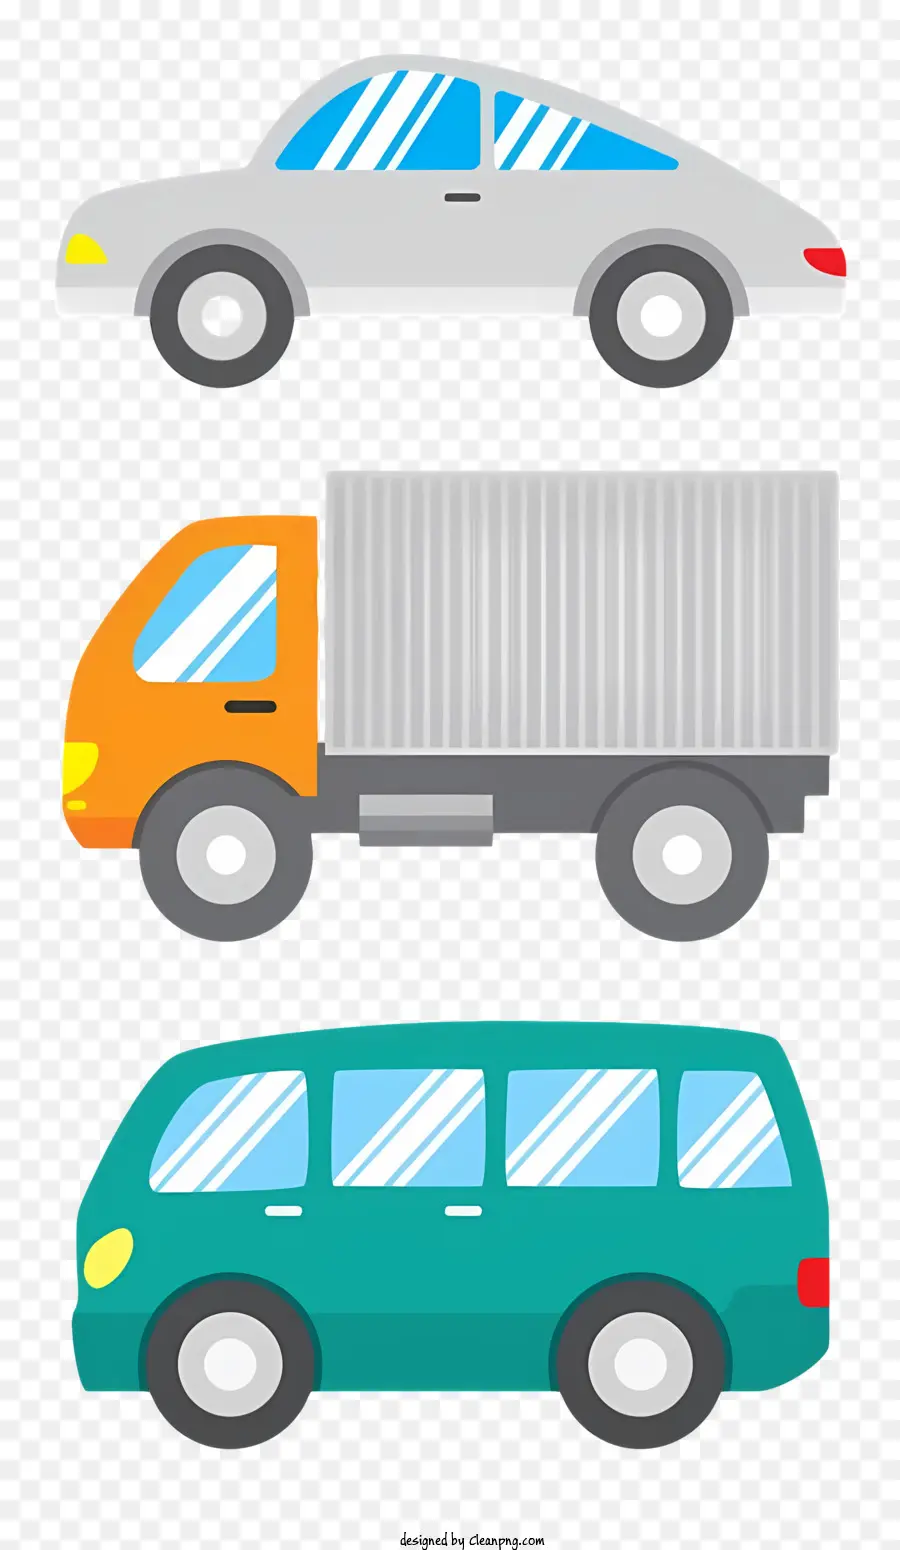 Orange - Drei Autos, einschließlich eines Lastwagens, geparkt auf dunkler Oberfläche